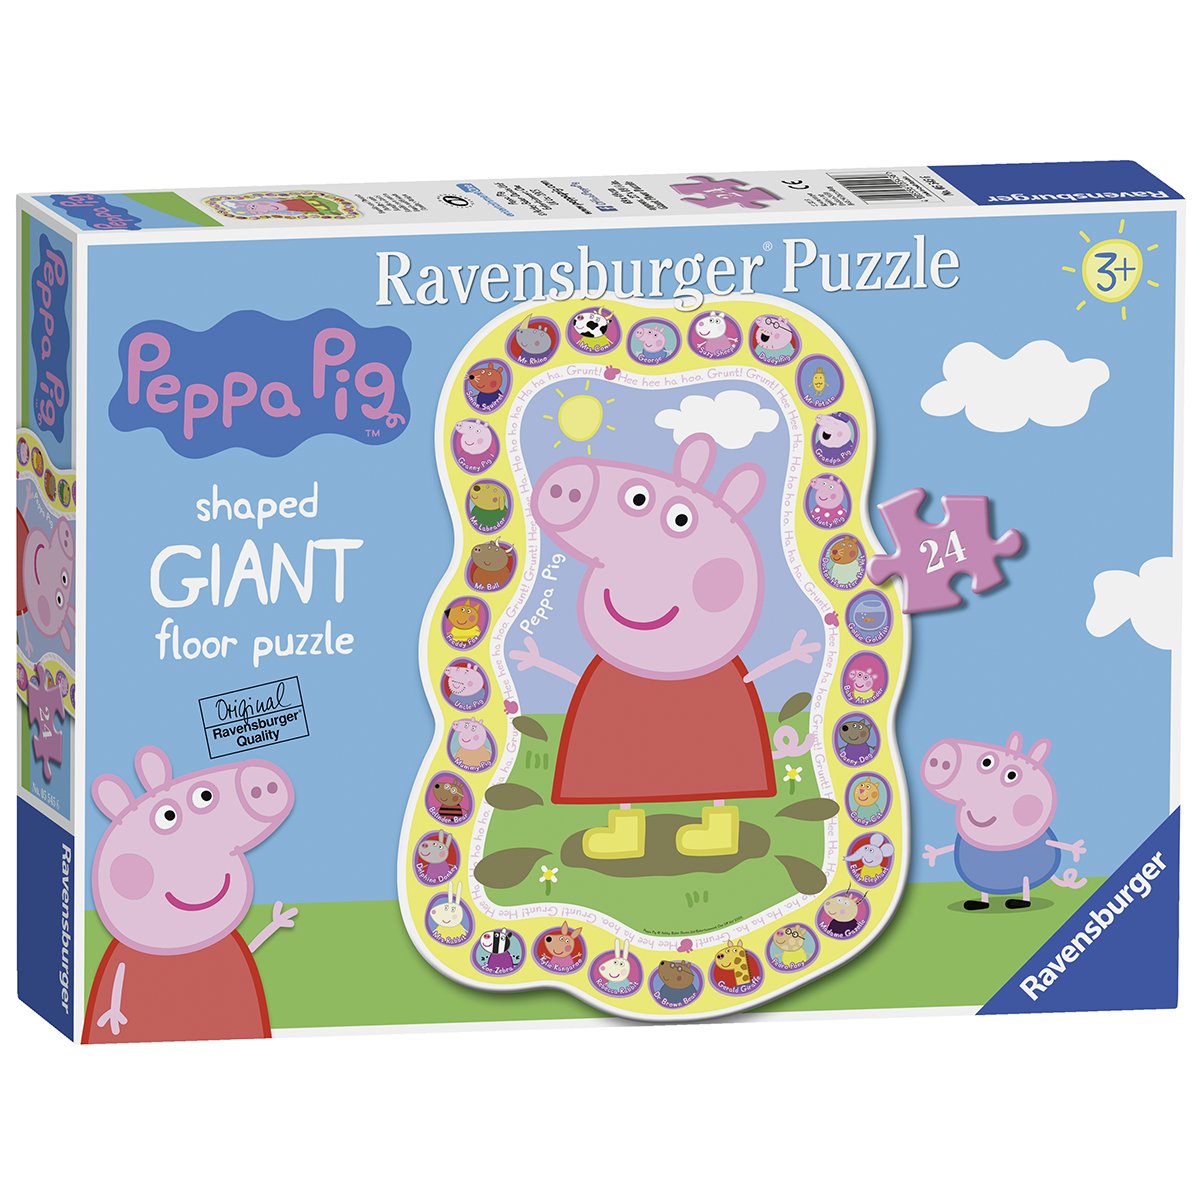 Ravensburger - puzzle 24 pezzi - formato sagomato – per bambini a partire dai 3 anni - peppa pig – 05545 - PEPPA PIG, RAVENSBURGER